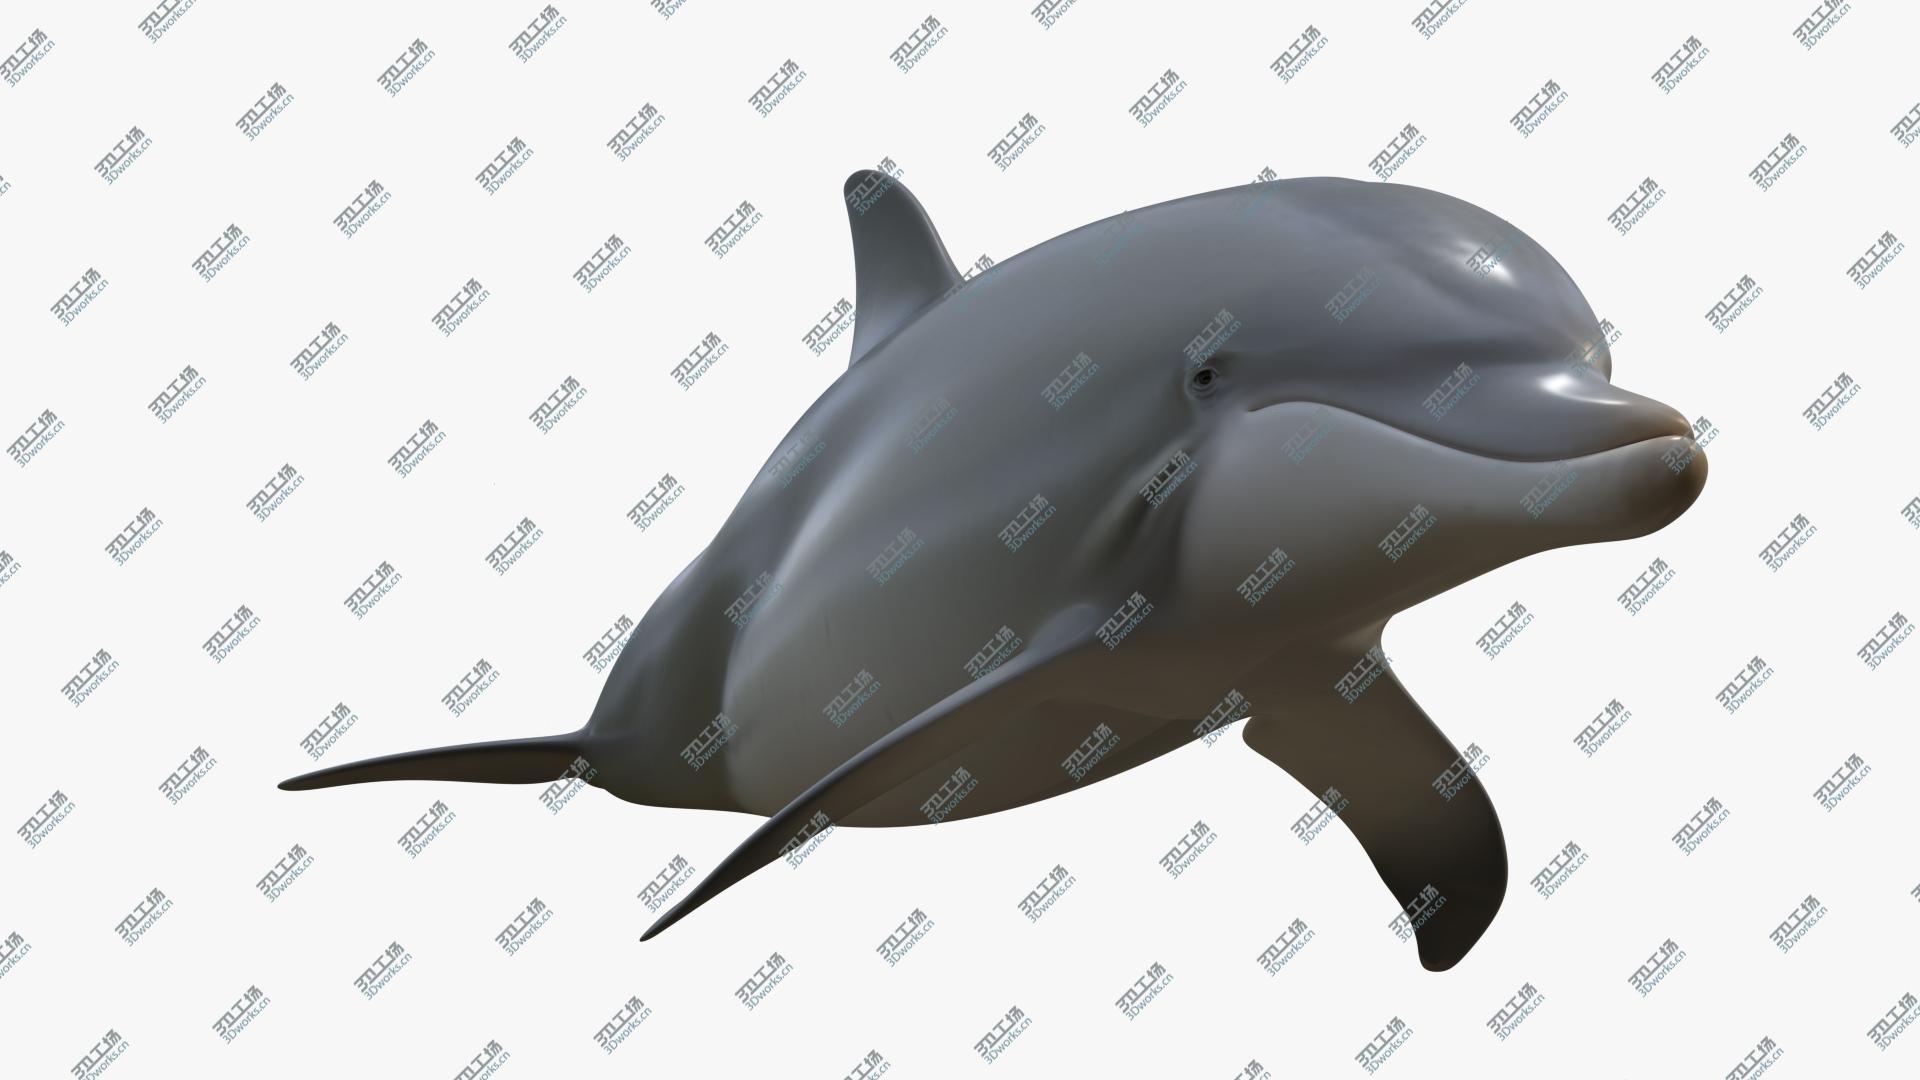 images/goods_img/202104021/3D Beautiful Common Bottlenose Dolphin model/4.jpg